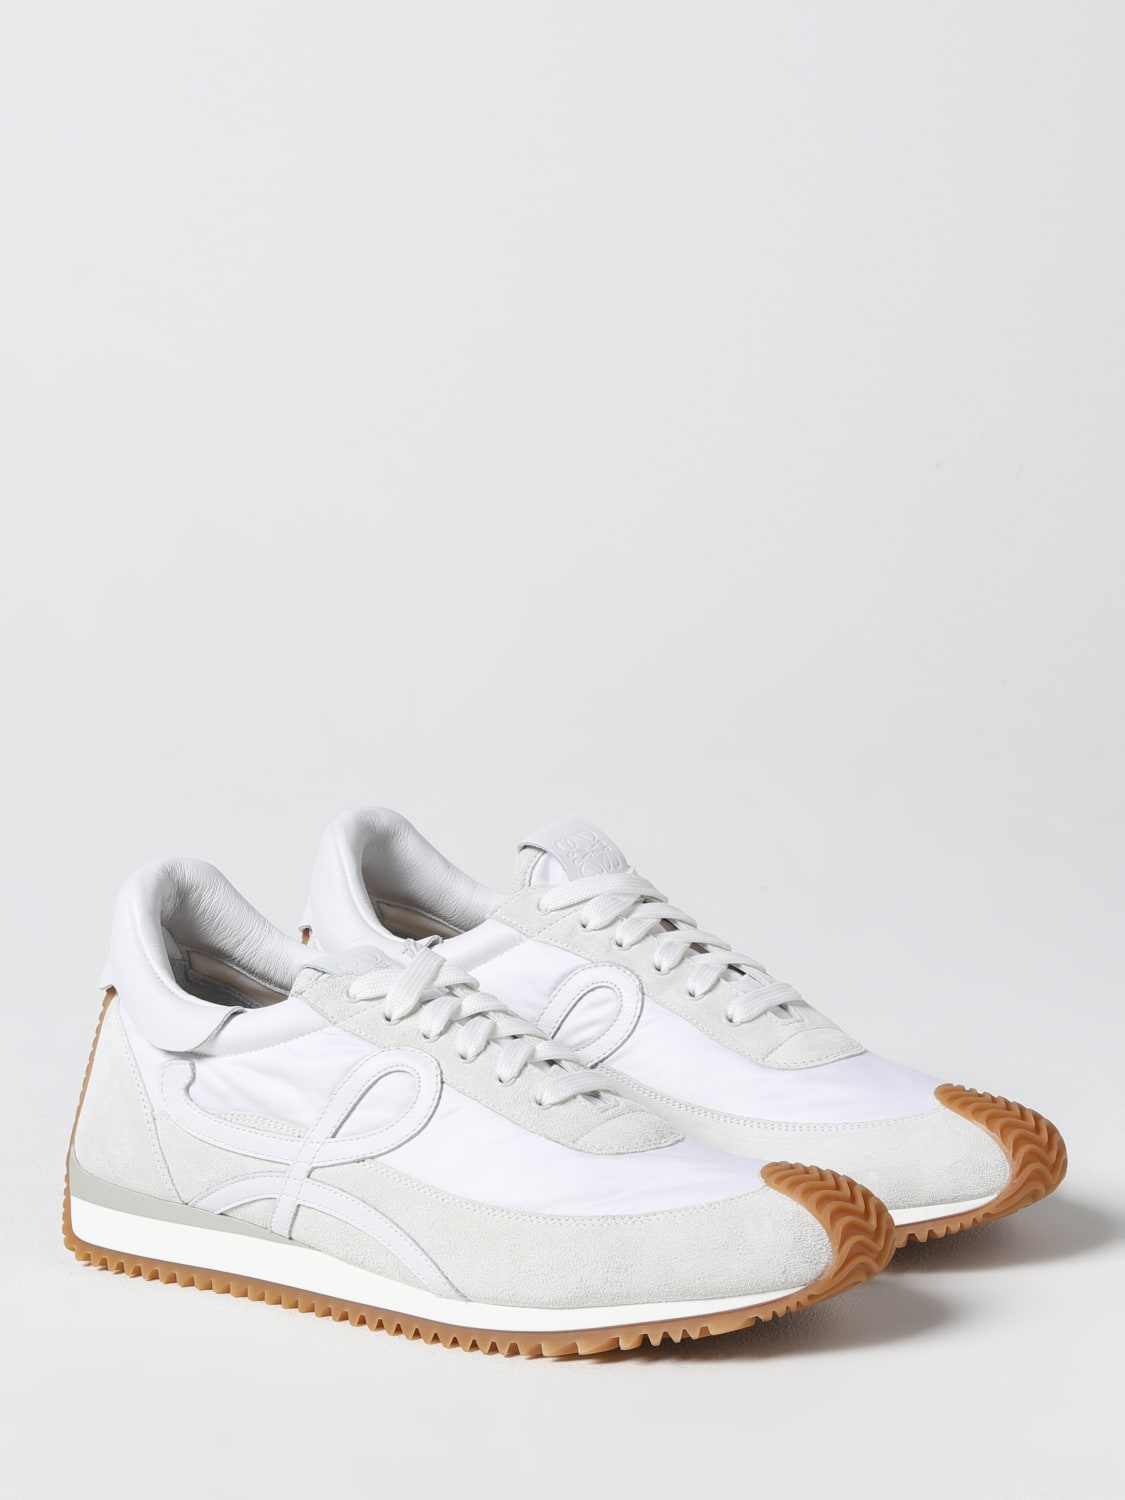 Loewe Men's x on - White - Low-top Sneakers